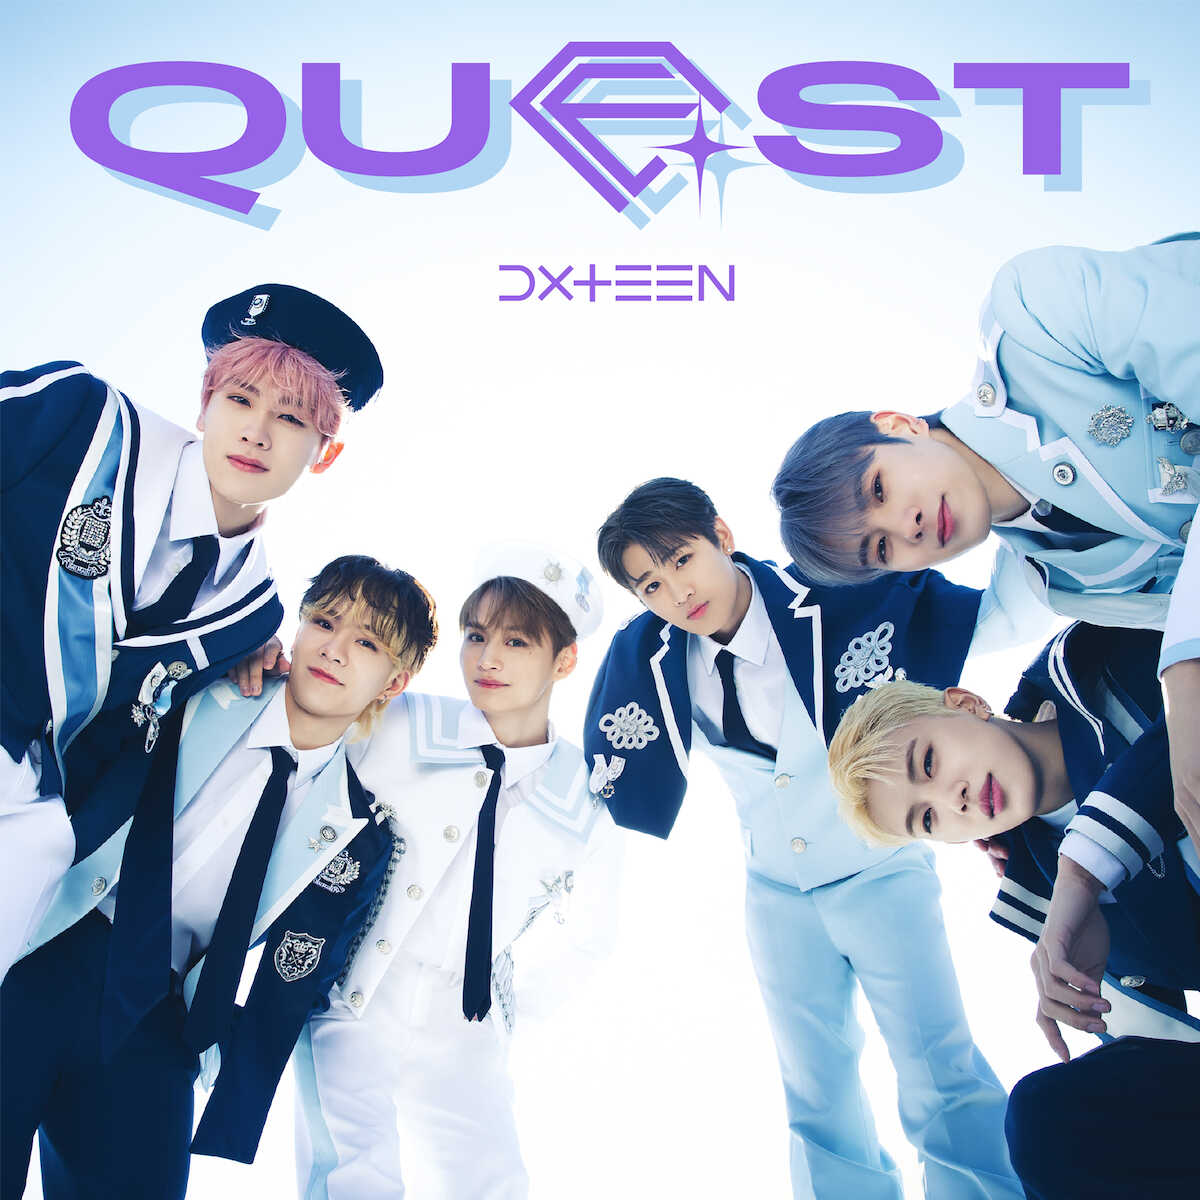 7月17日に発売される1stアルバム「Quest」のジャケット